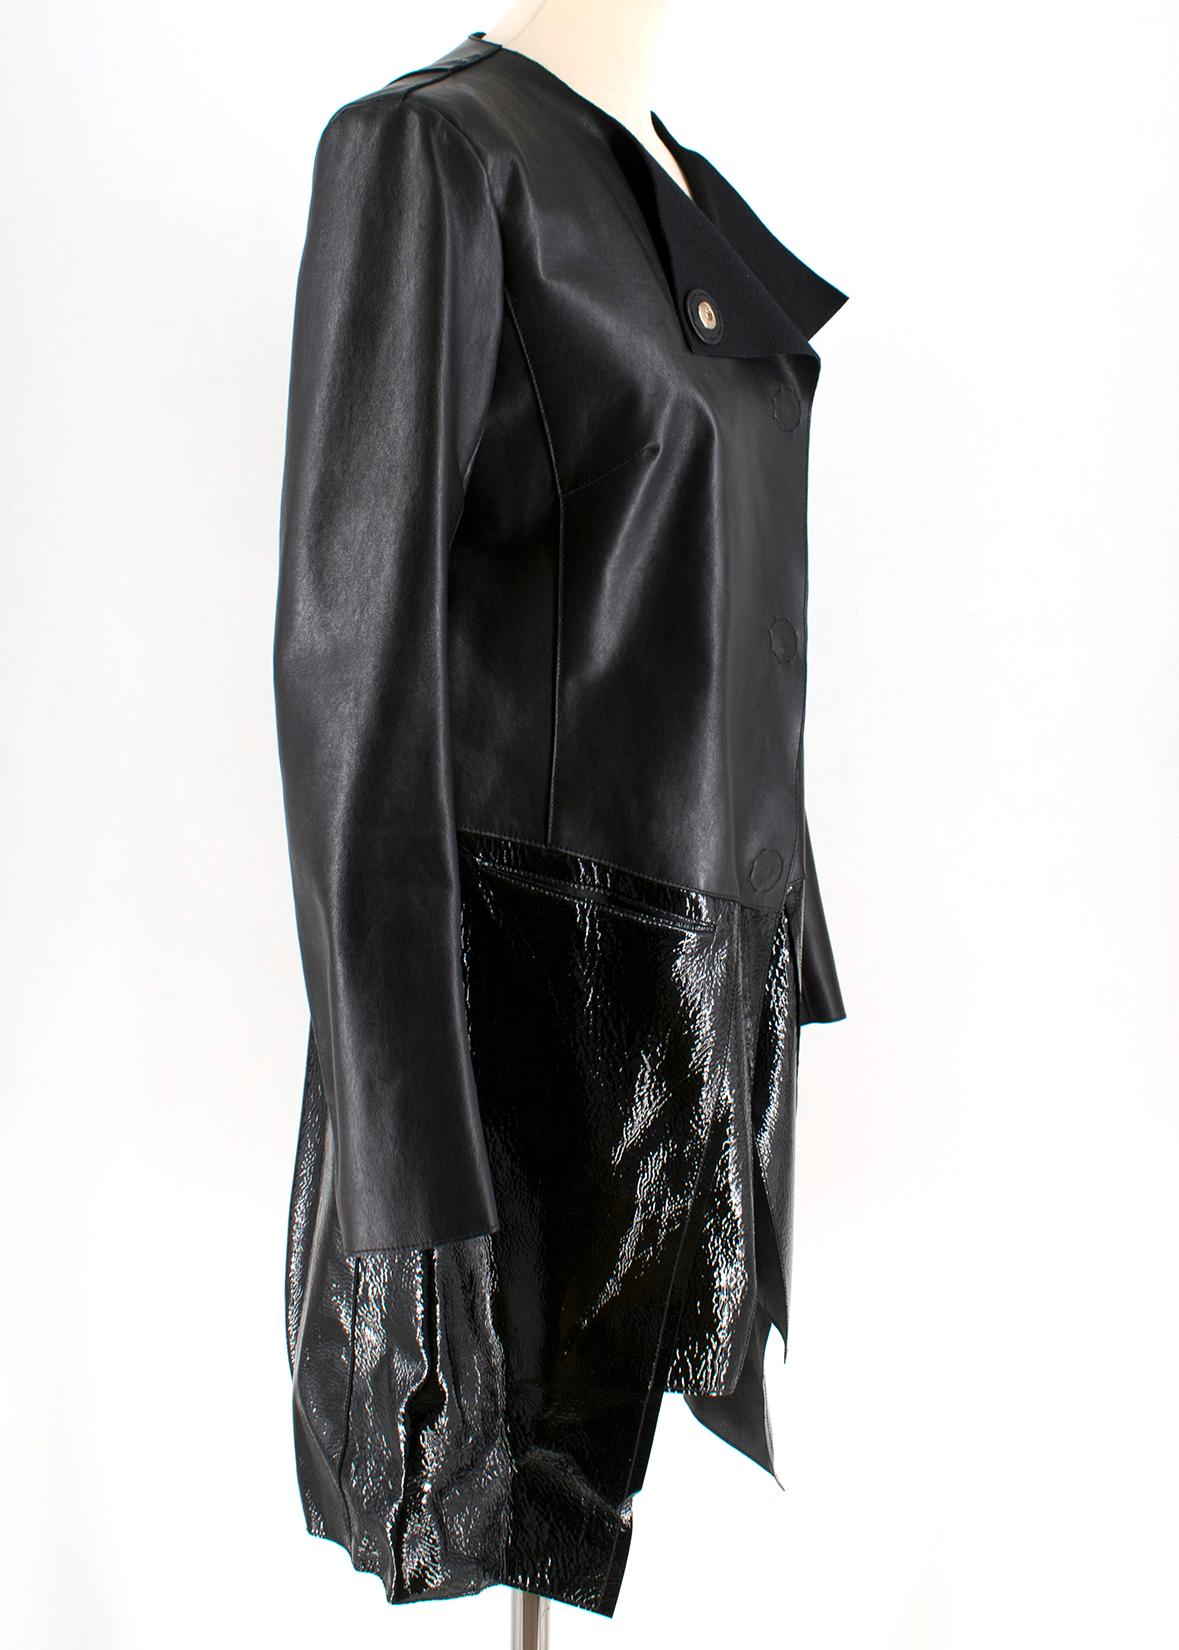 Women's Fendi Black Leather Two Toned Coat - Size US 6